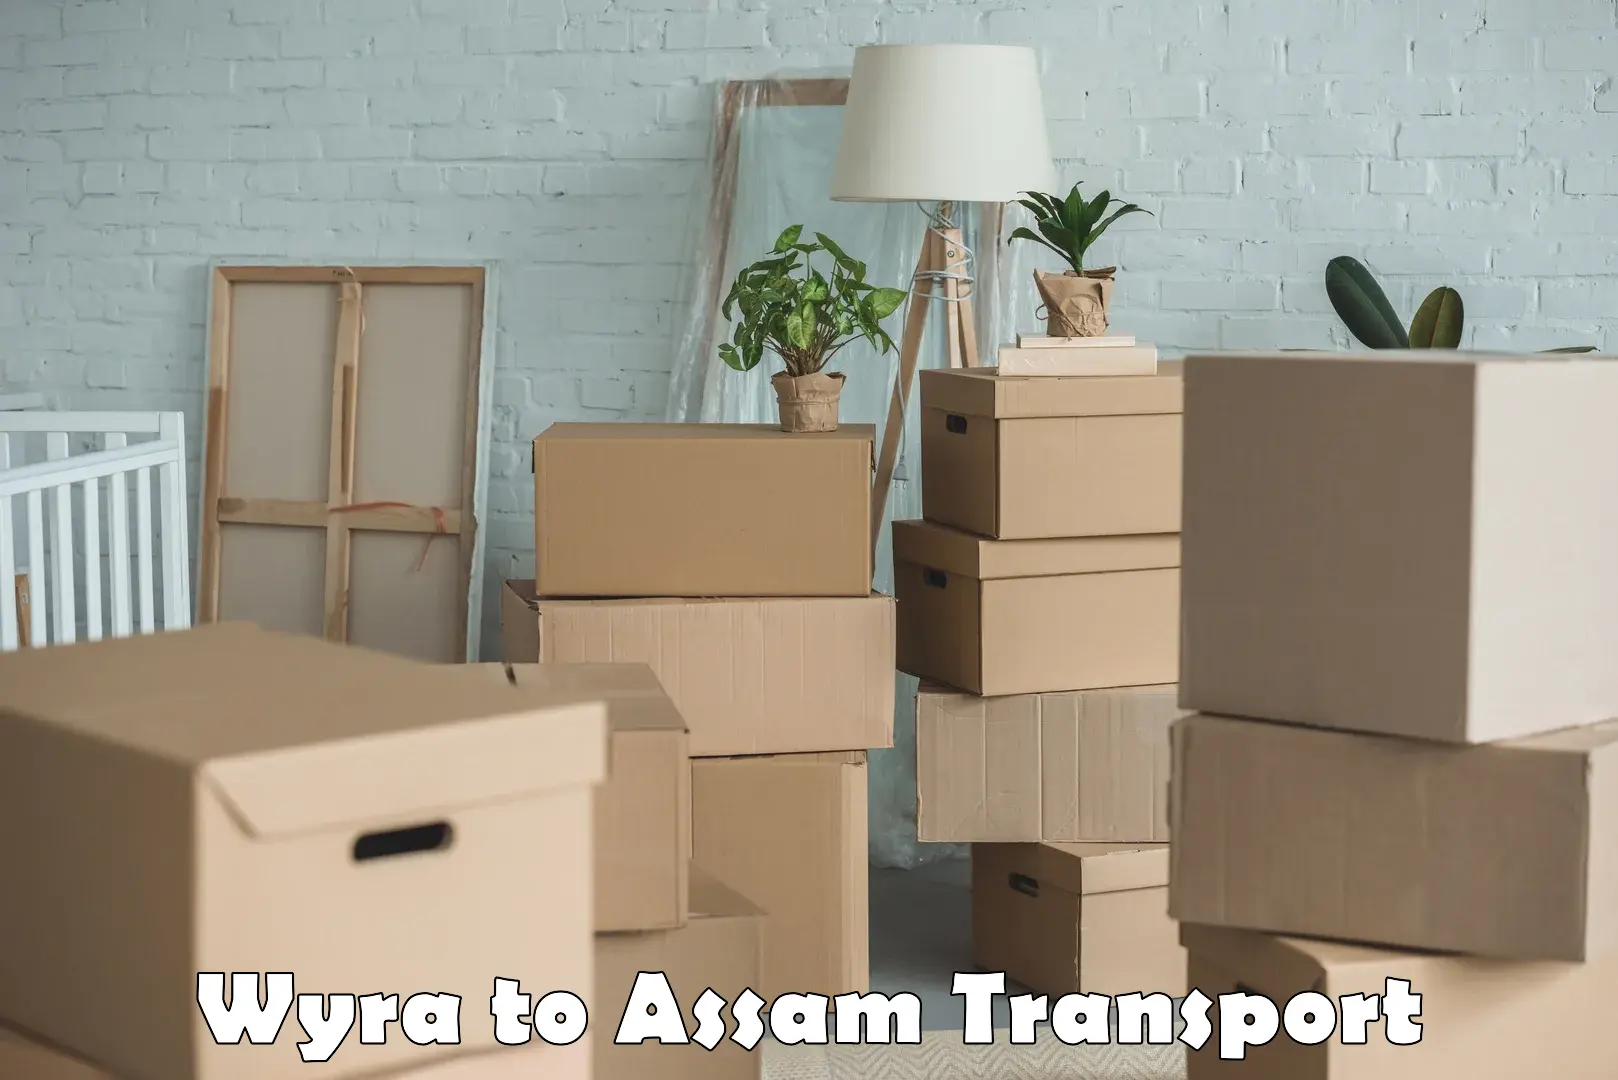 Nearest transport service Wyra to Lala Assam